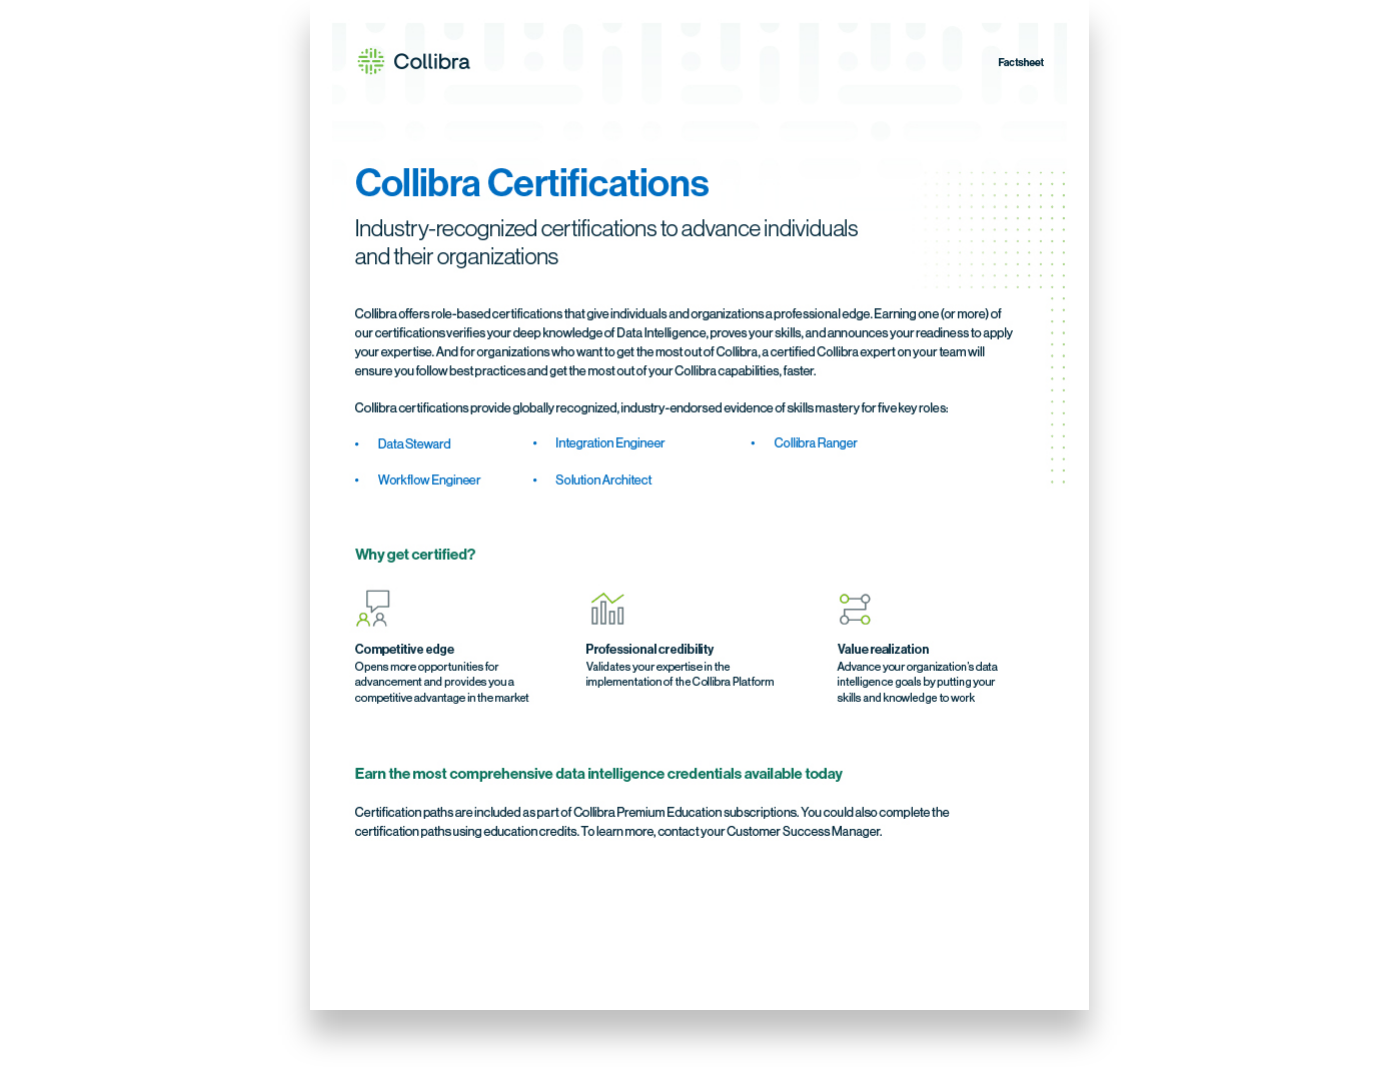 Collibra Certification Program Collibra